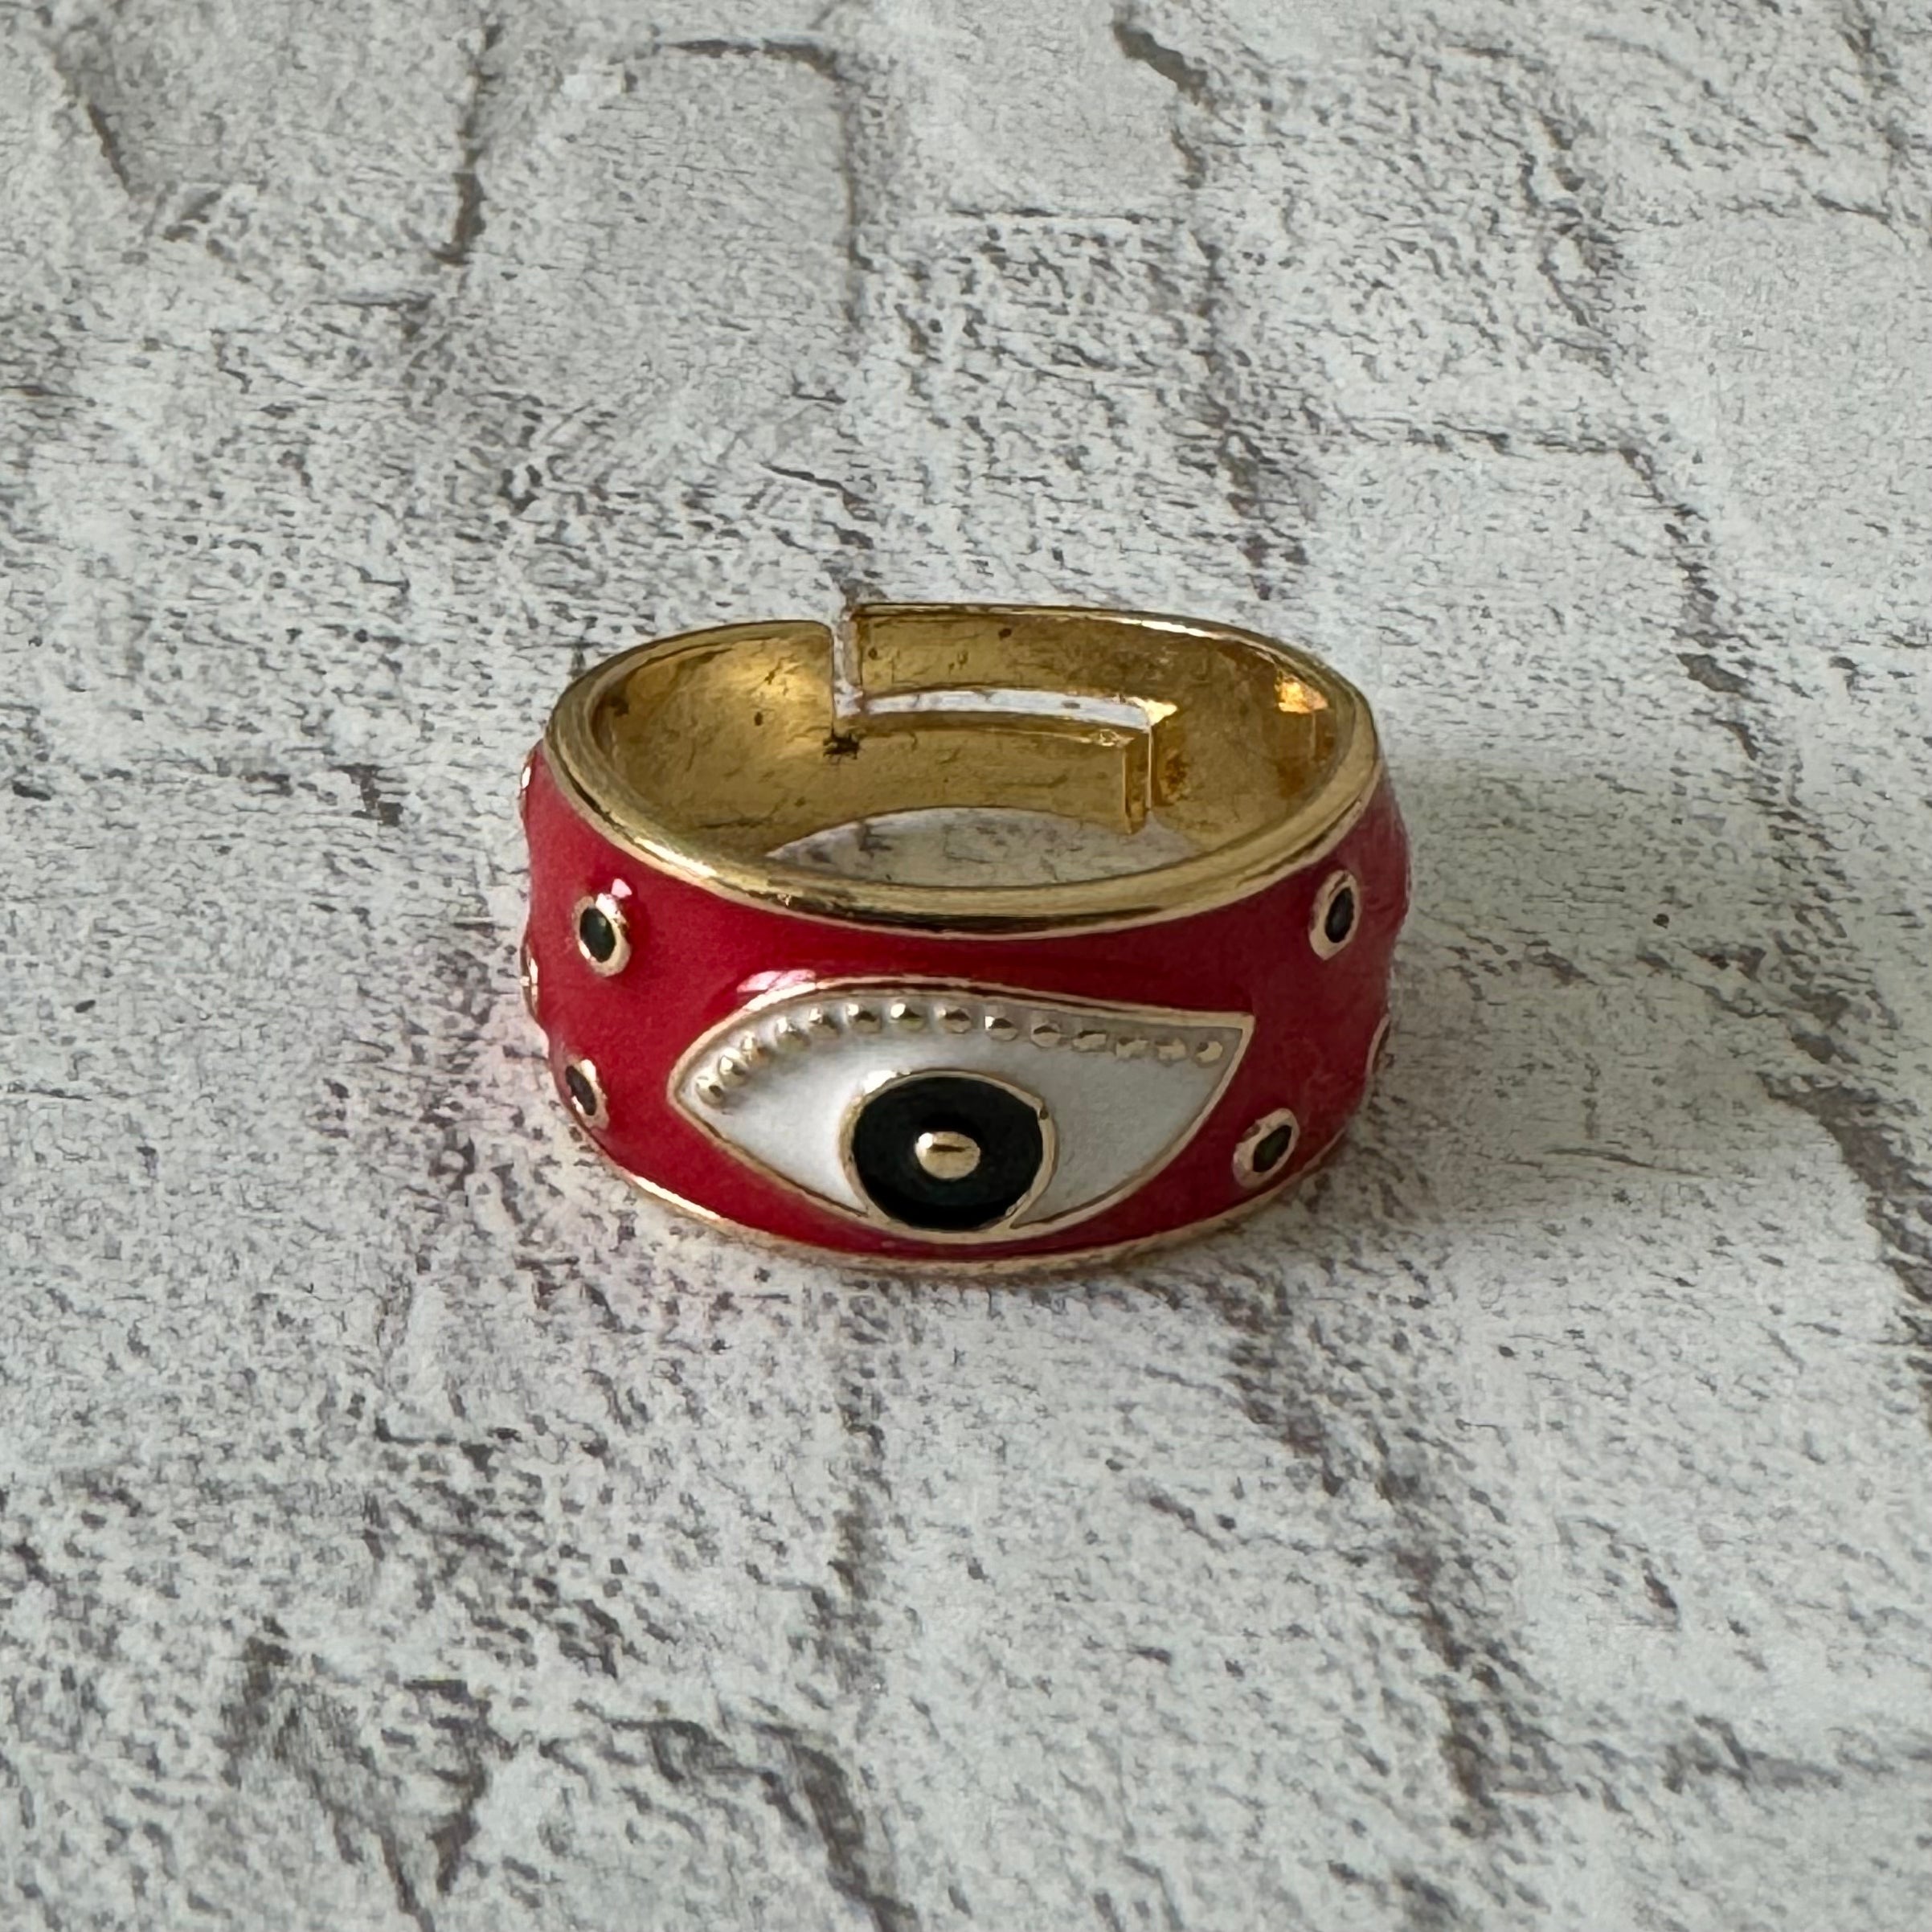 Enamel Eye Band Ring